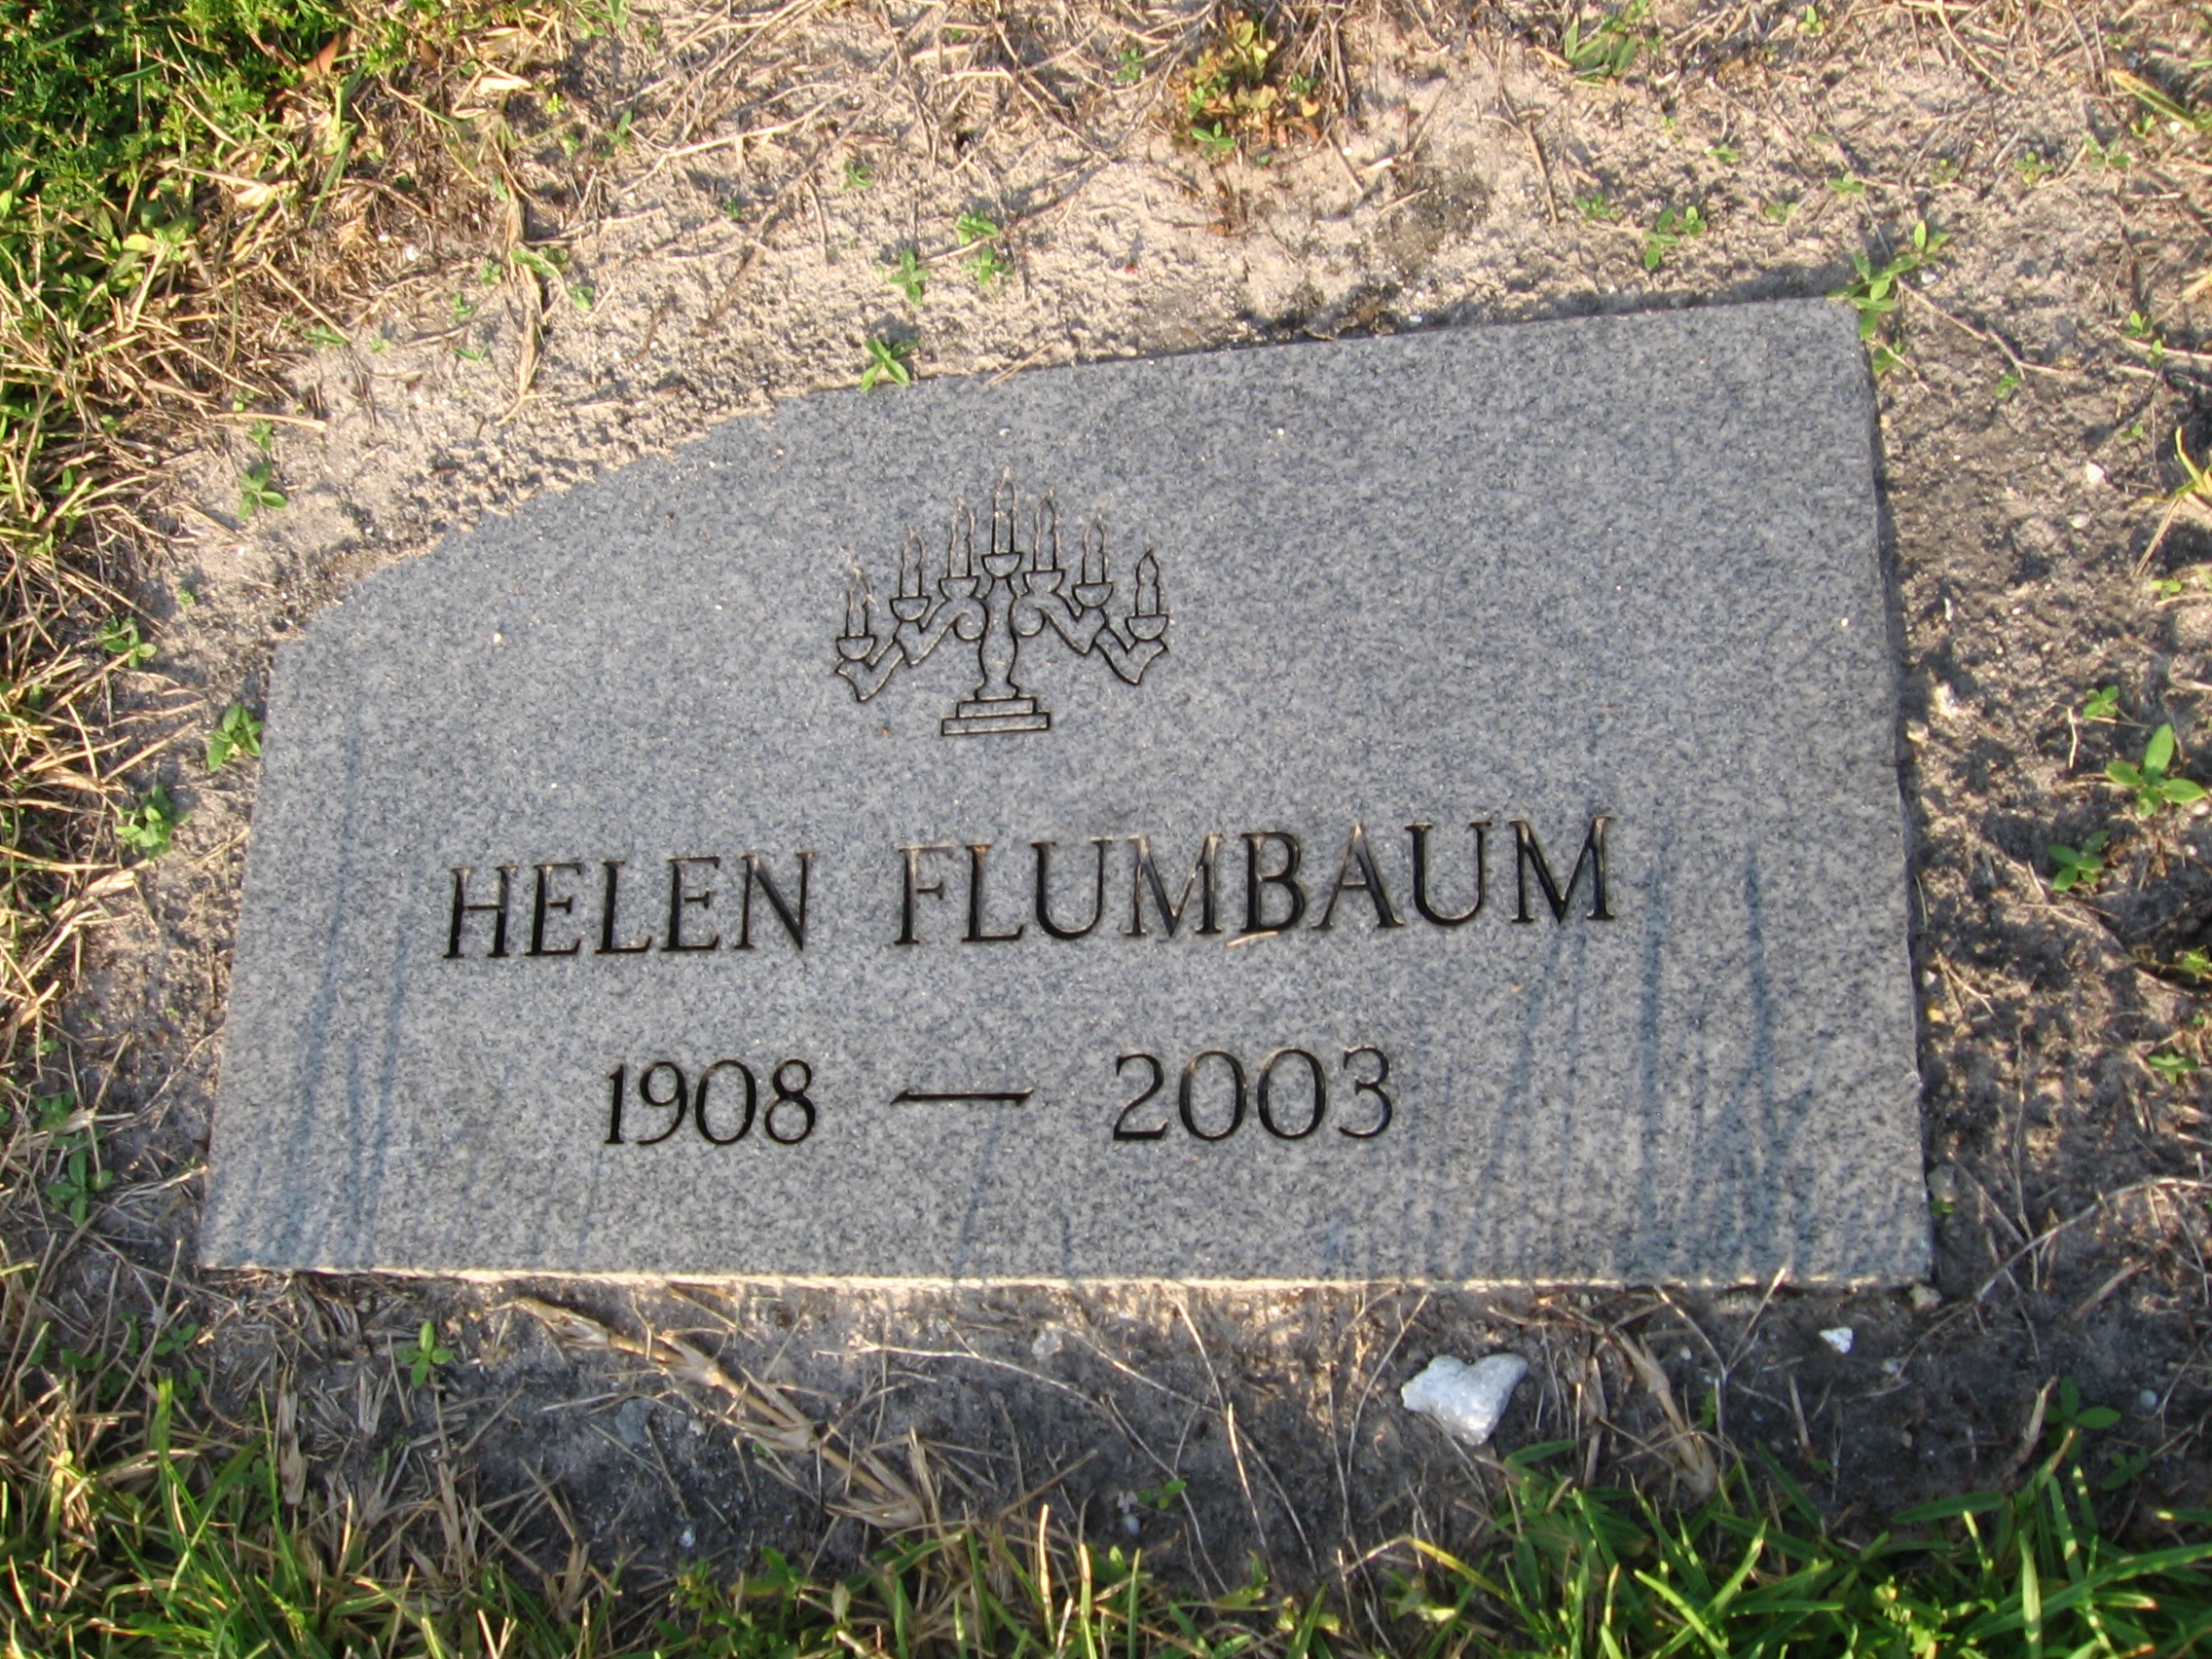 Helen Flumbaum